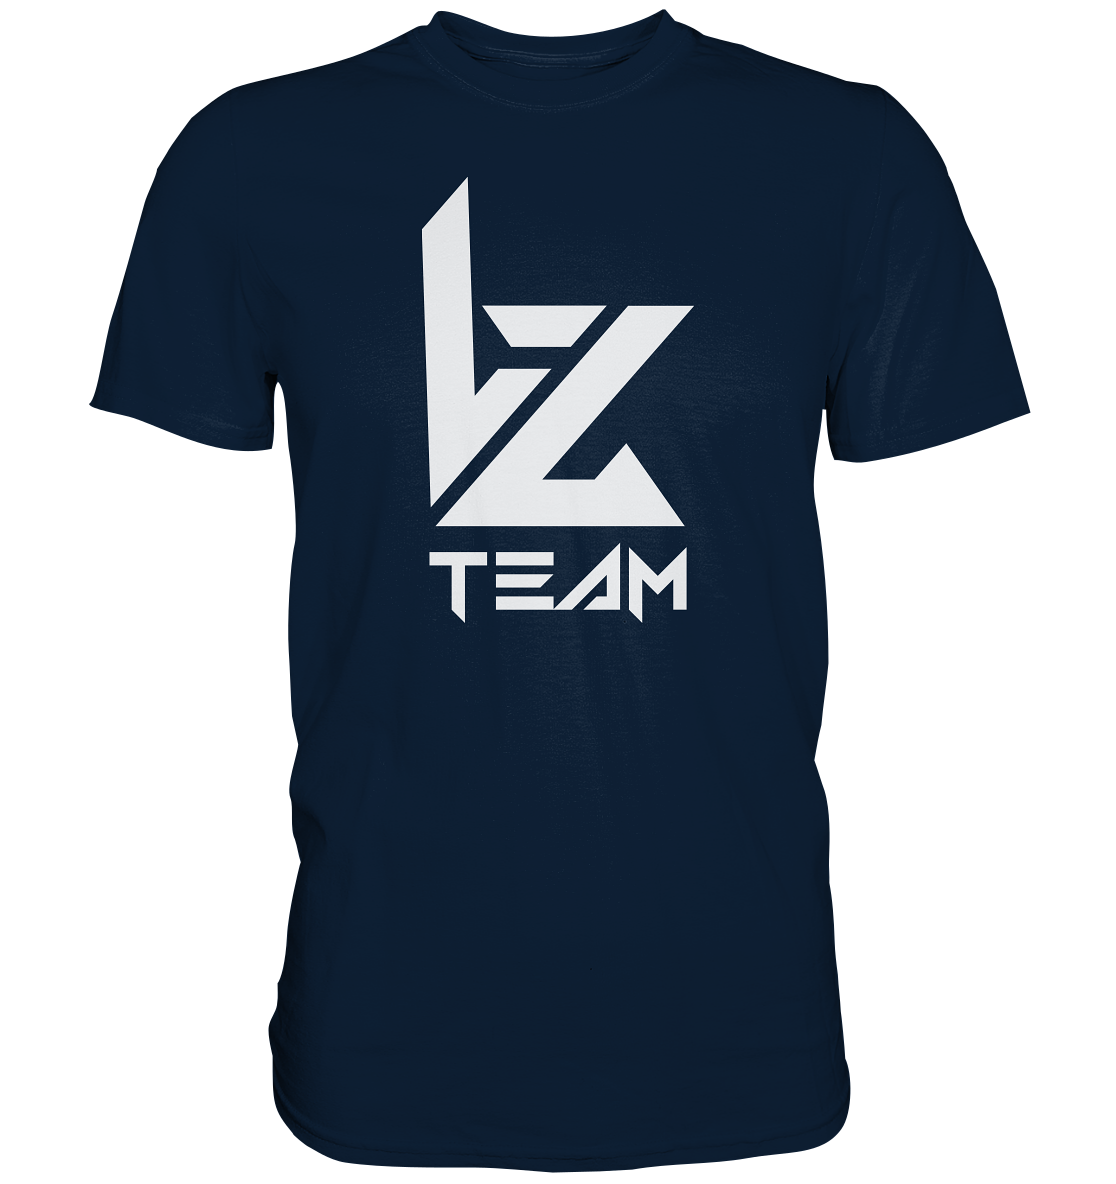 TEAM VZ - Basic Shirt